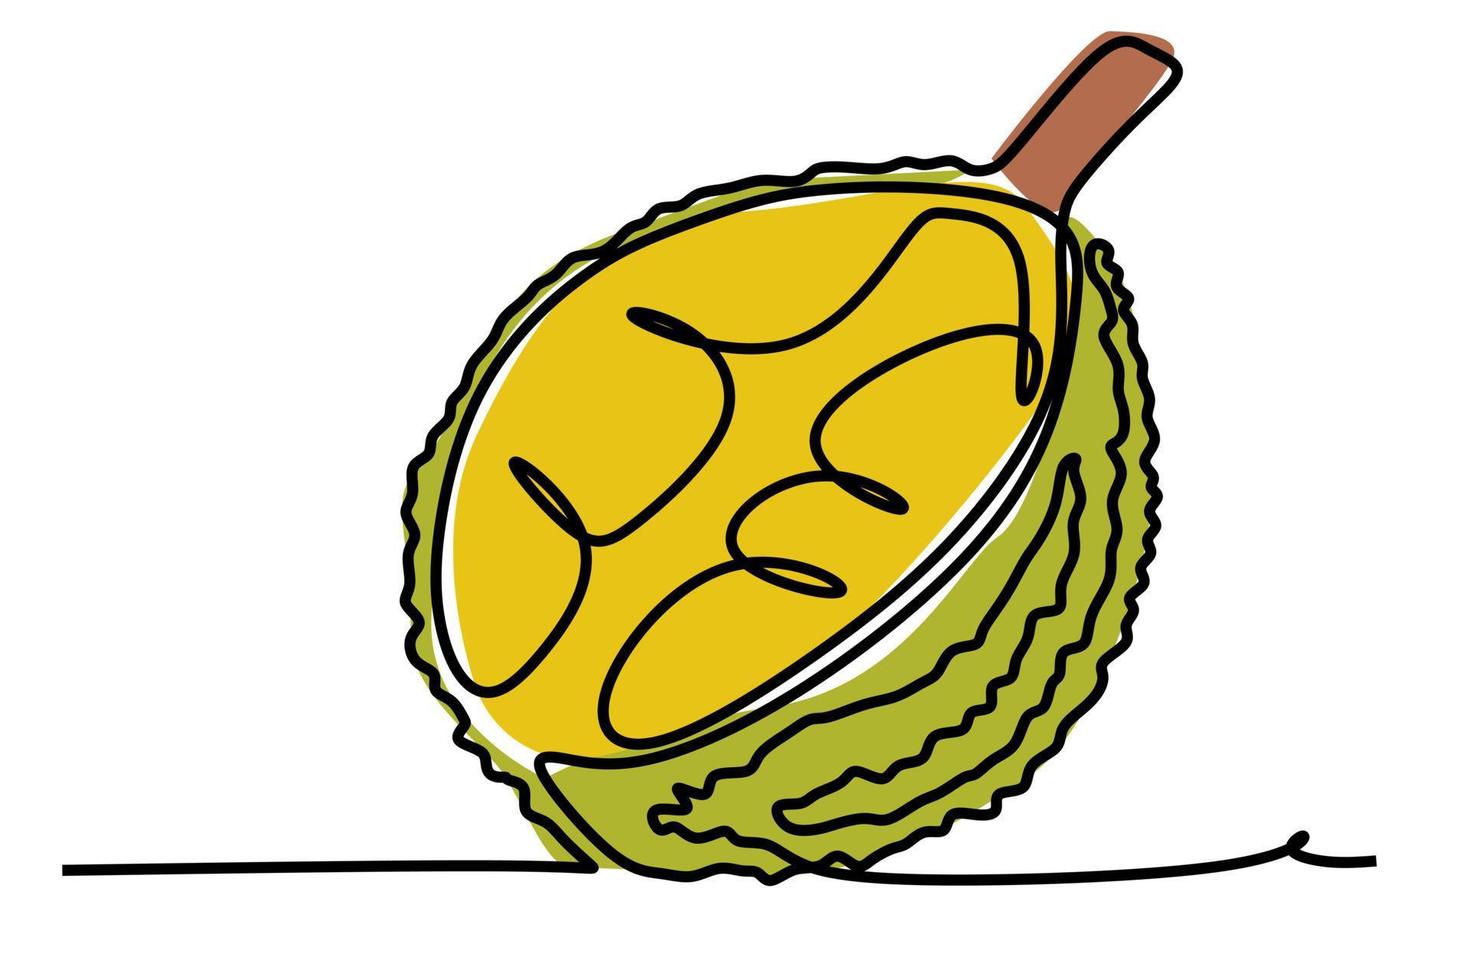 un dibujo de línea continua de frutas tropicales amarillas de durian. ilustración de vector de estilo dibujado a mano de color plano simple para el concepto de vida natural y saludable